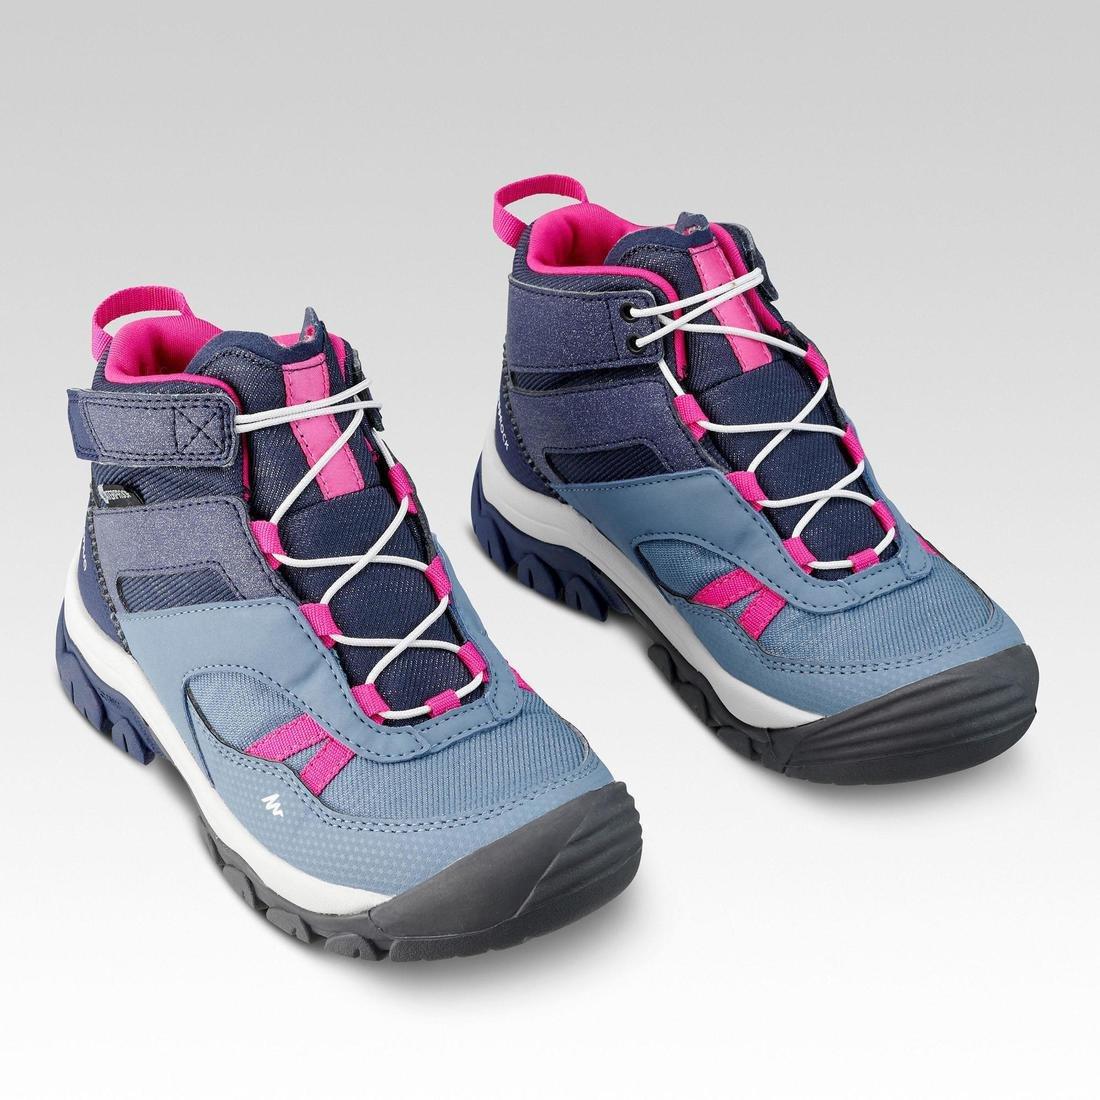 QUECHUA - Kids' Waterproof Boots - Junior Size 10 - Grey, storm blue